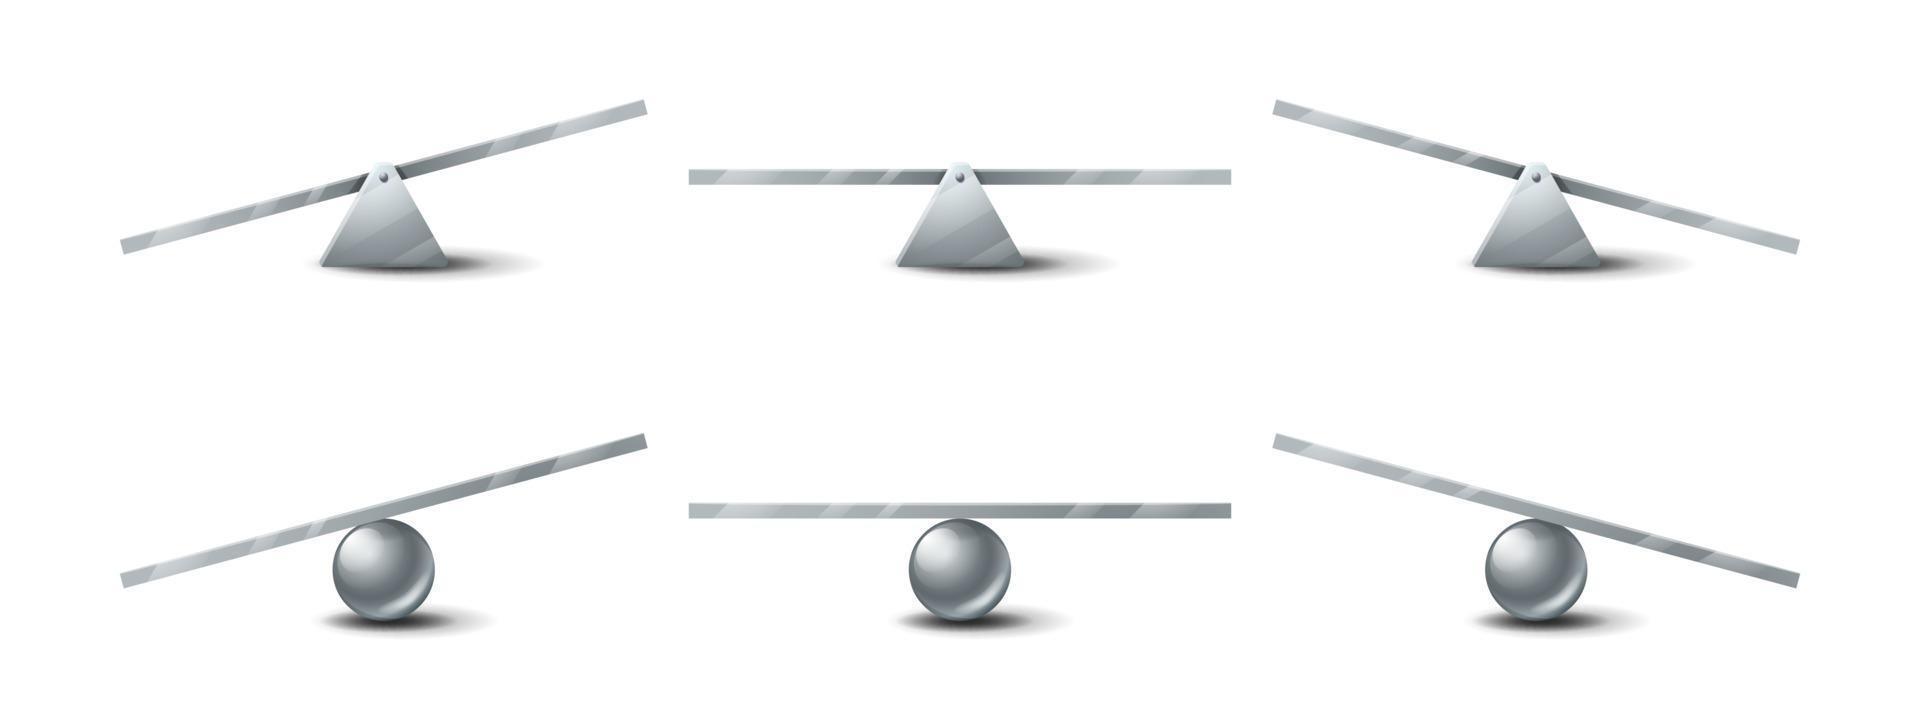 conjunto de balancín, columpios de metal, balancín 3d vector